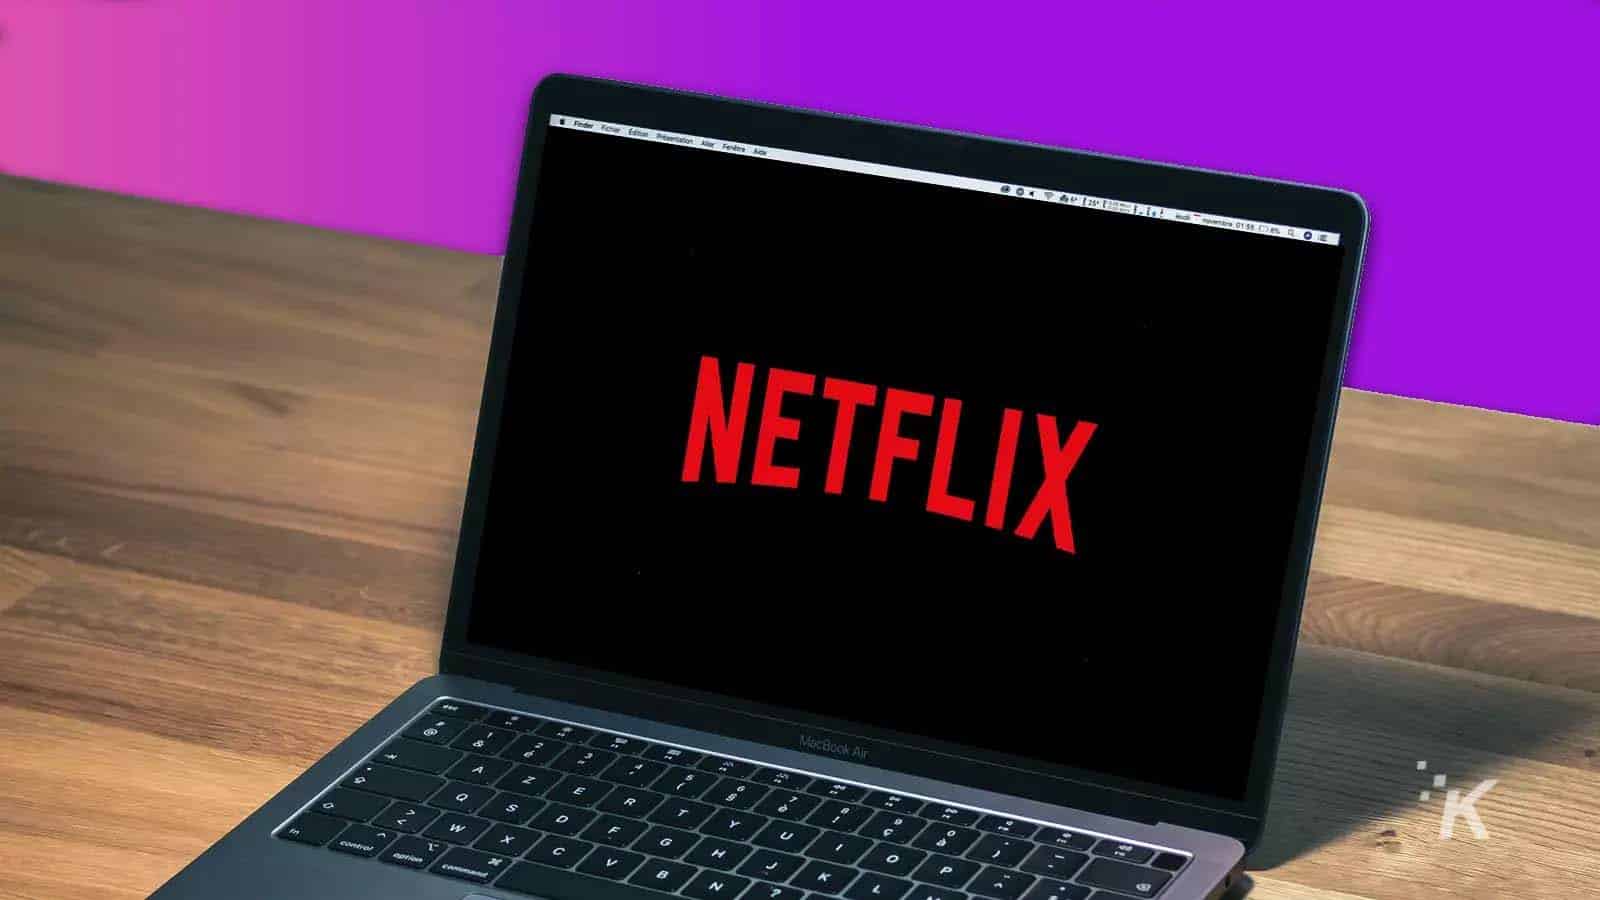 Netflix on laptop on table